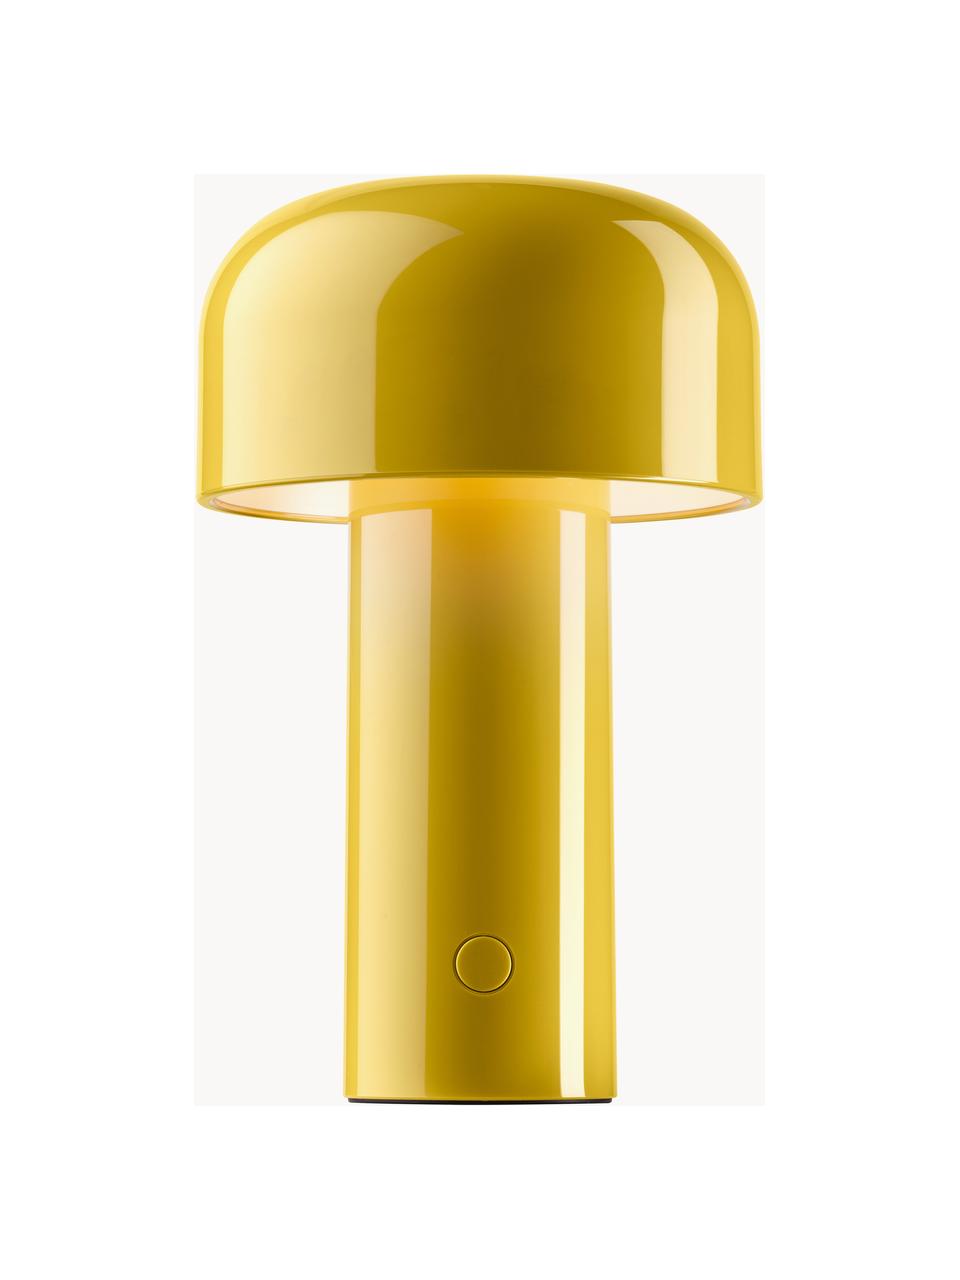 Lampa stołowa LED z funkcją przyciemniania Bellhop, Tworzywo sztuczne, Cytrynowy żółty, błyszczący, Ø 13 x W 20 cm